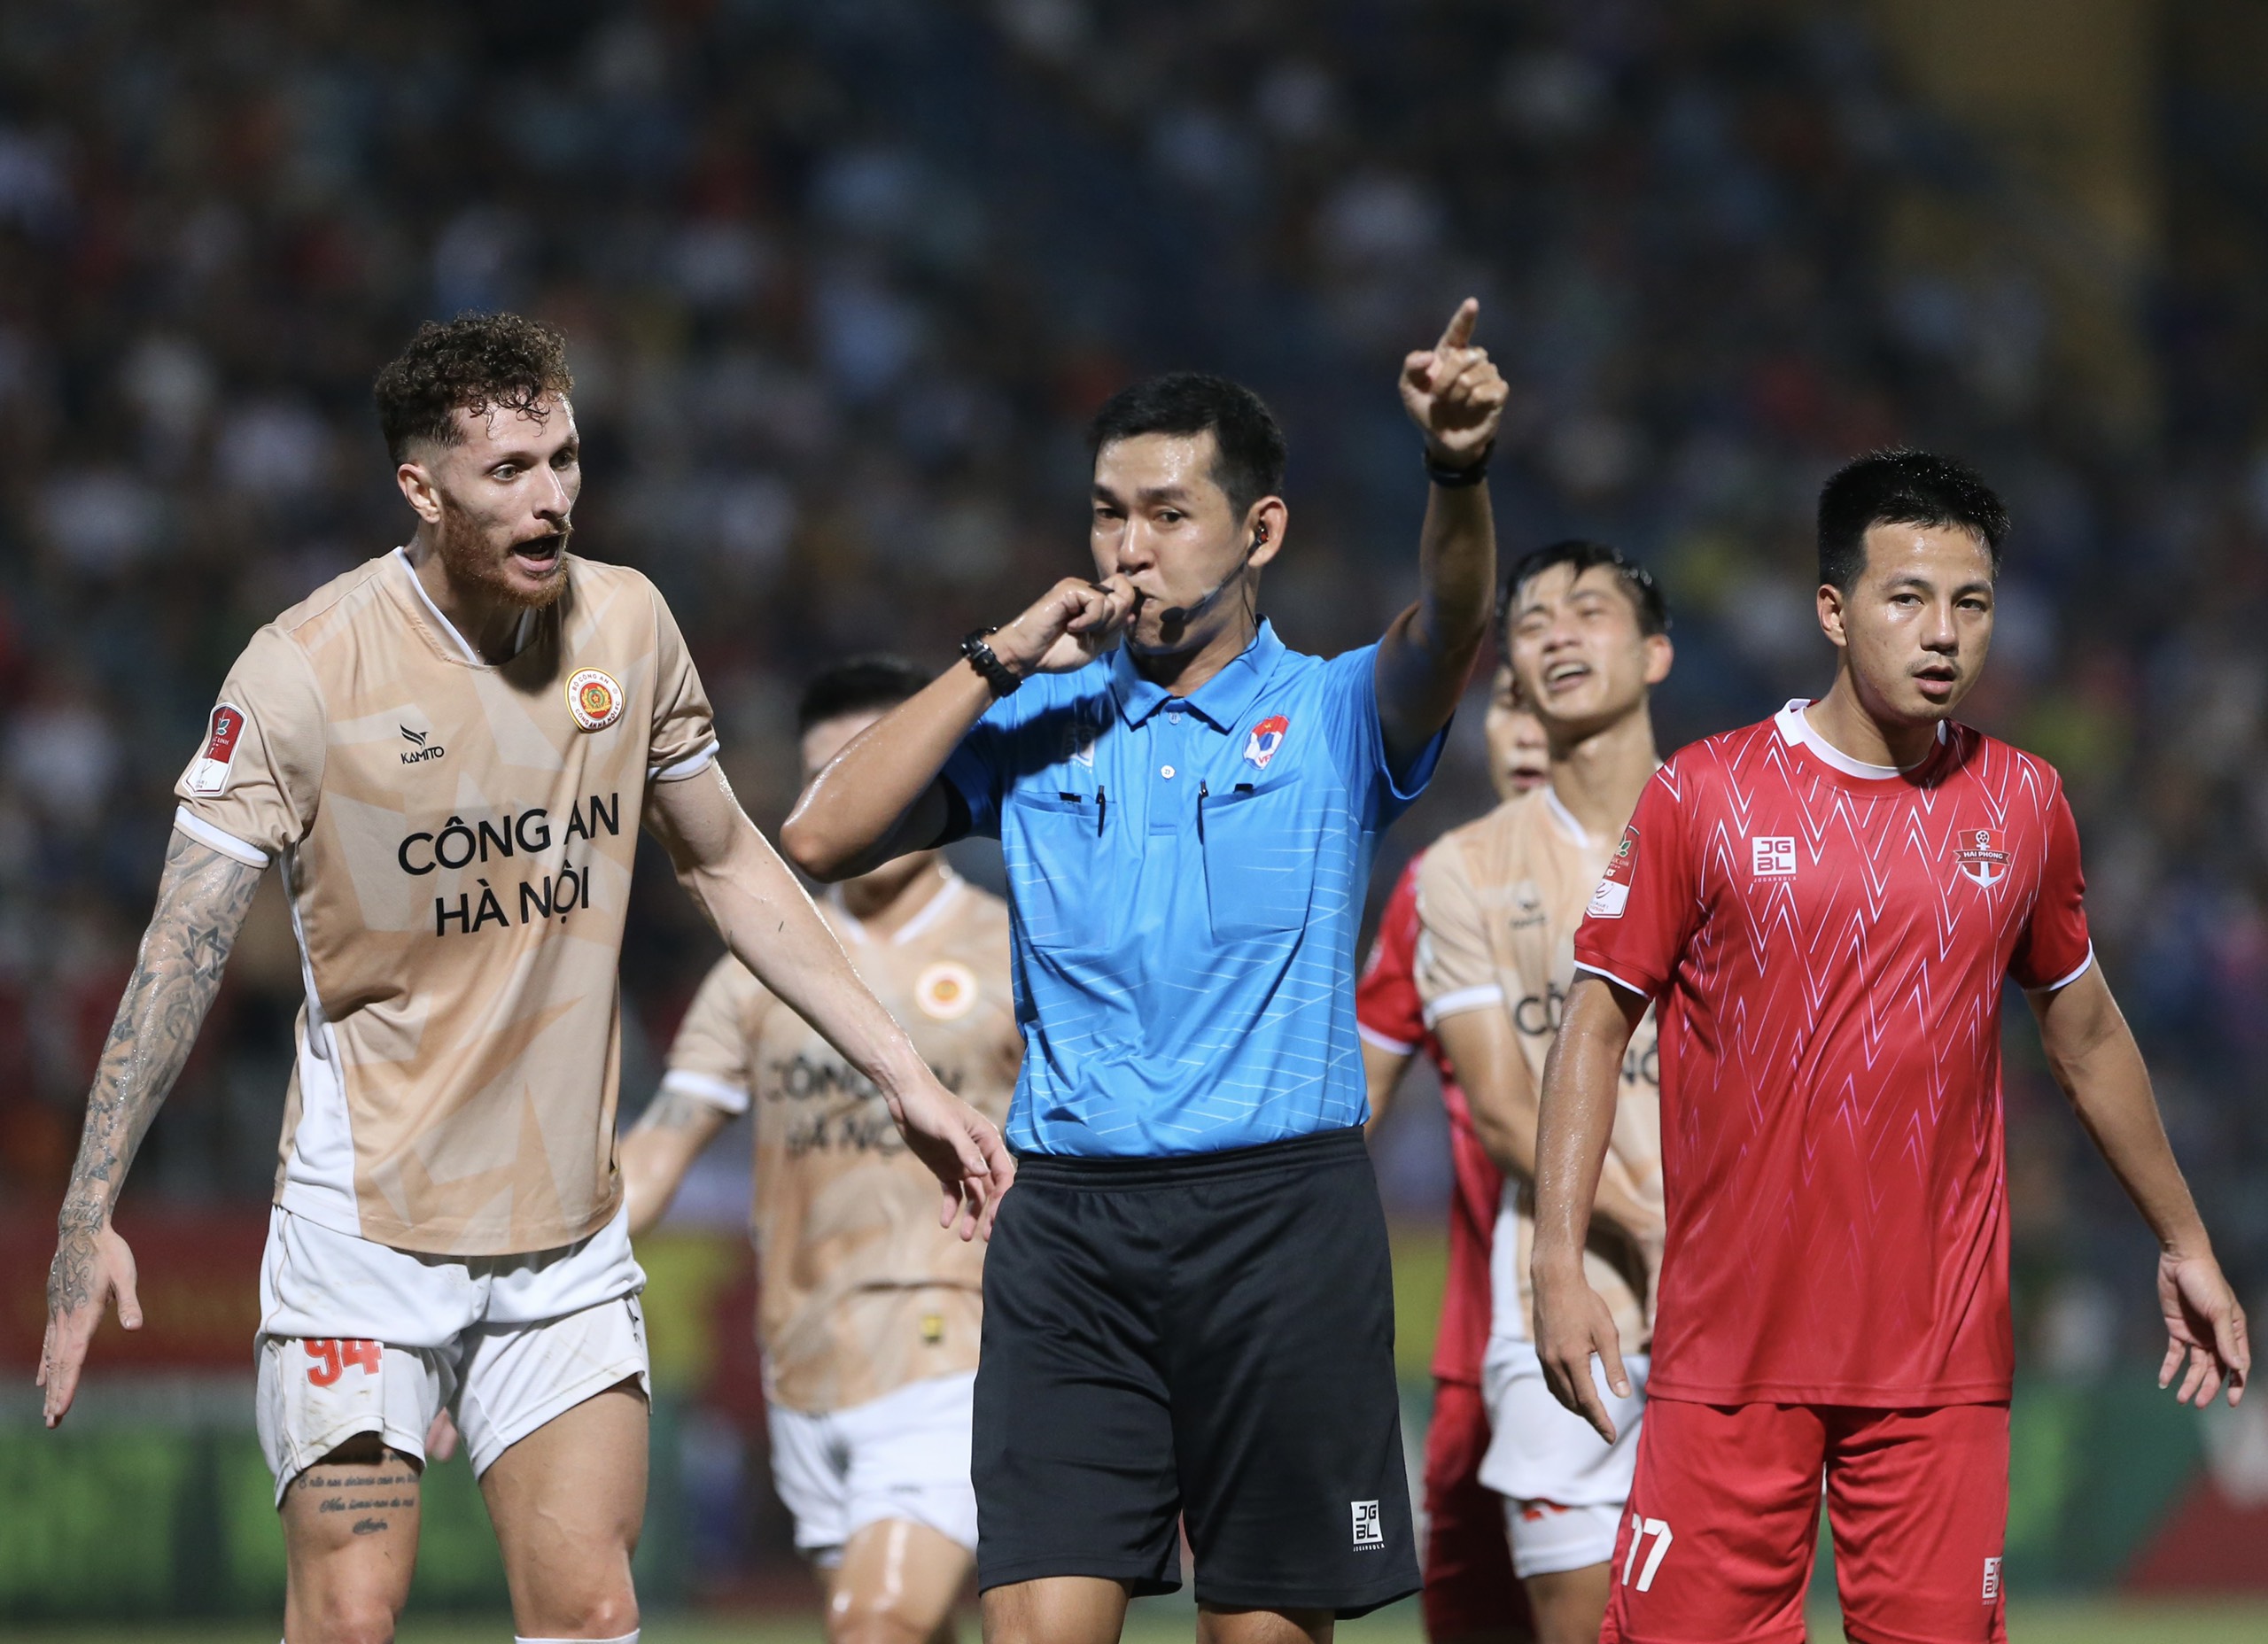 Tin nóng bóng đá Việt 23/6: HAGL tổn thất lực lượng khi gặp CAHN, BTC trao Cúp vô địch sớm cho Nam Định - Ảnh 3.